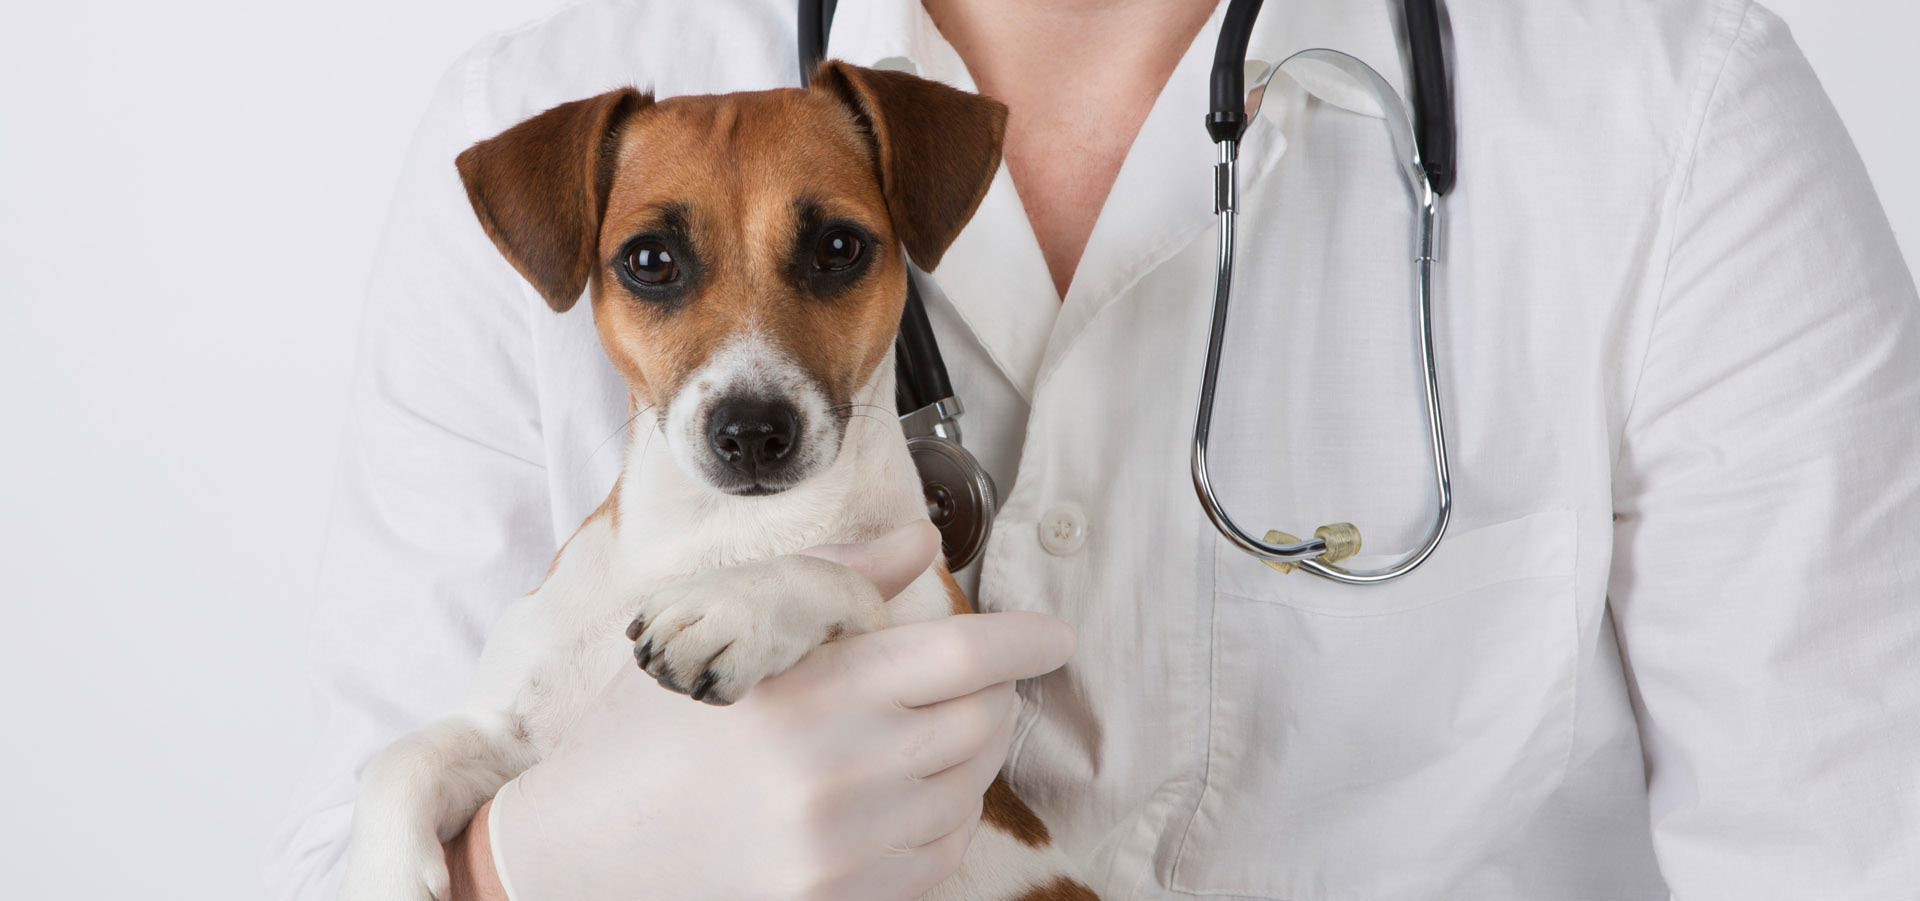 Мнение специалистов относительно стерилизации собак